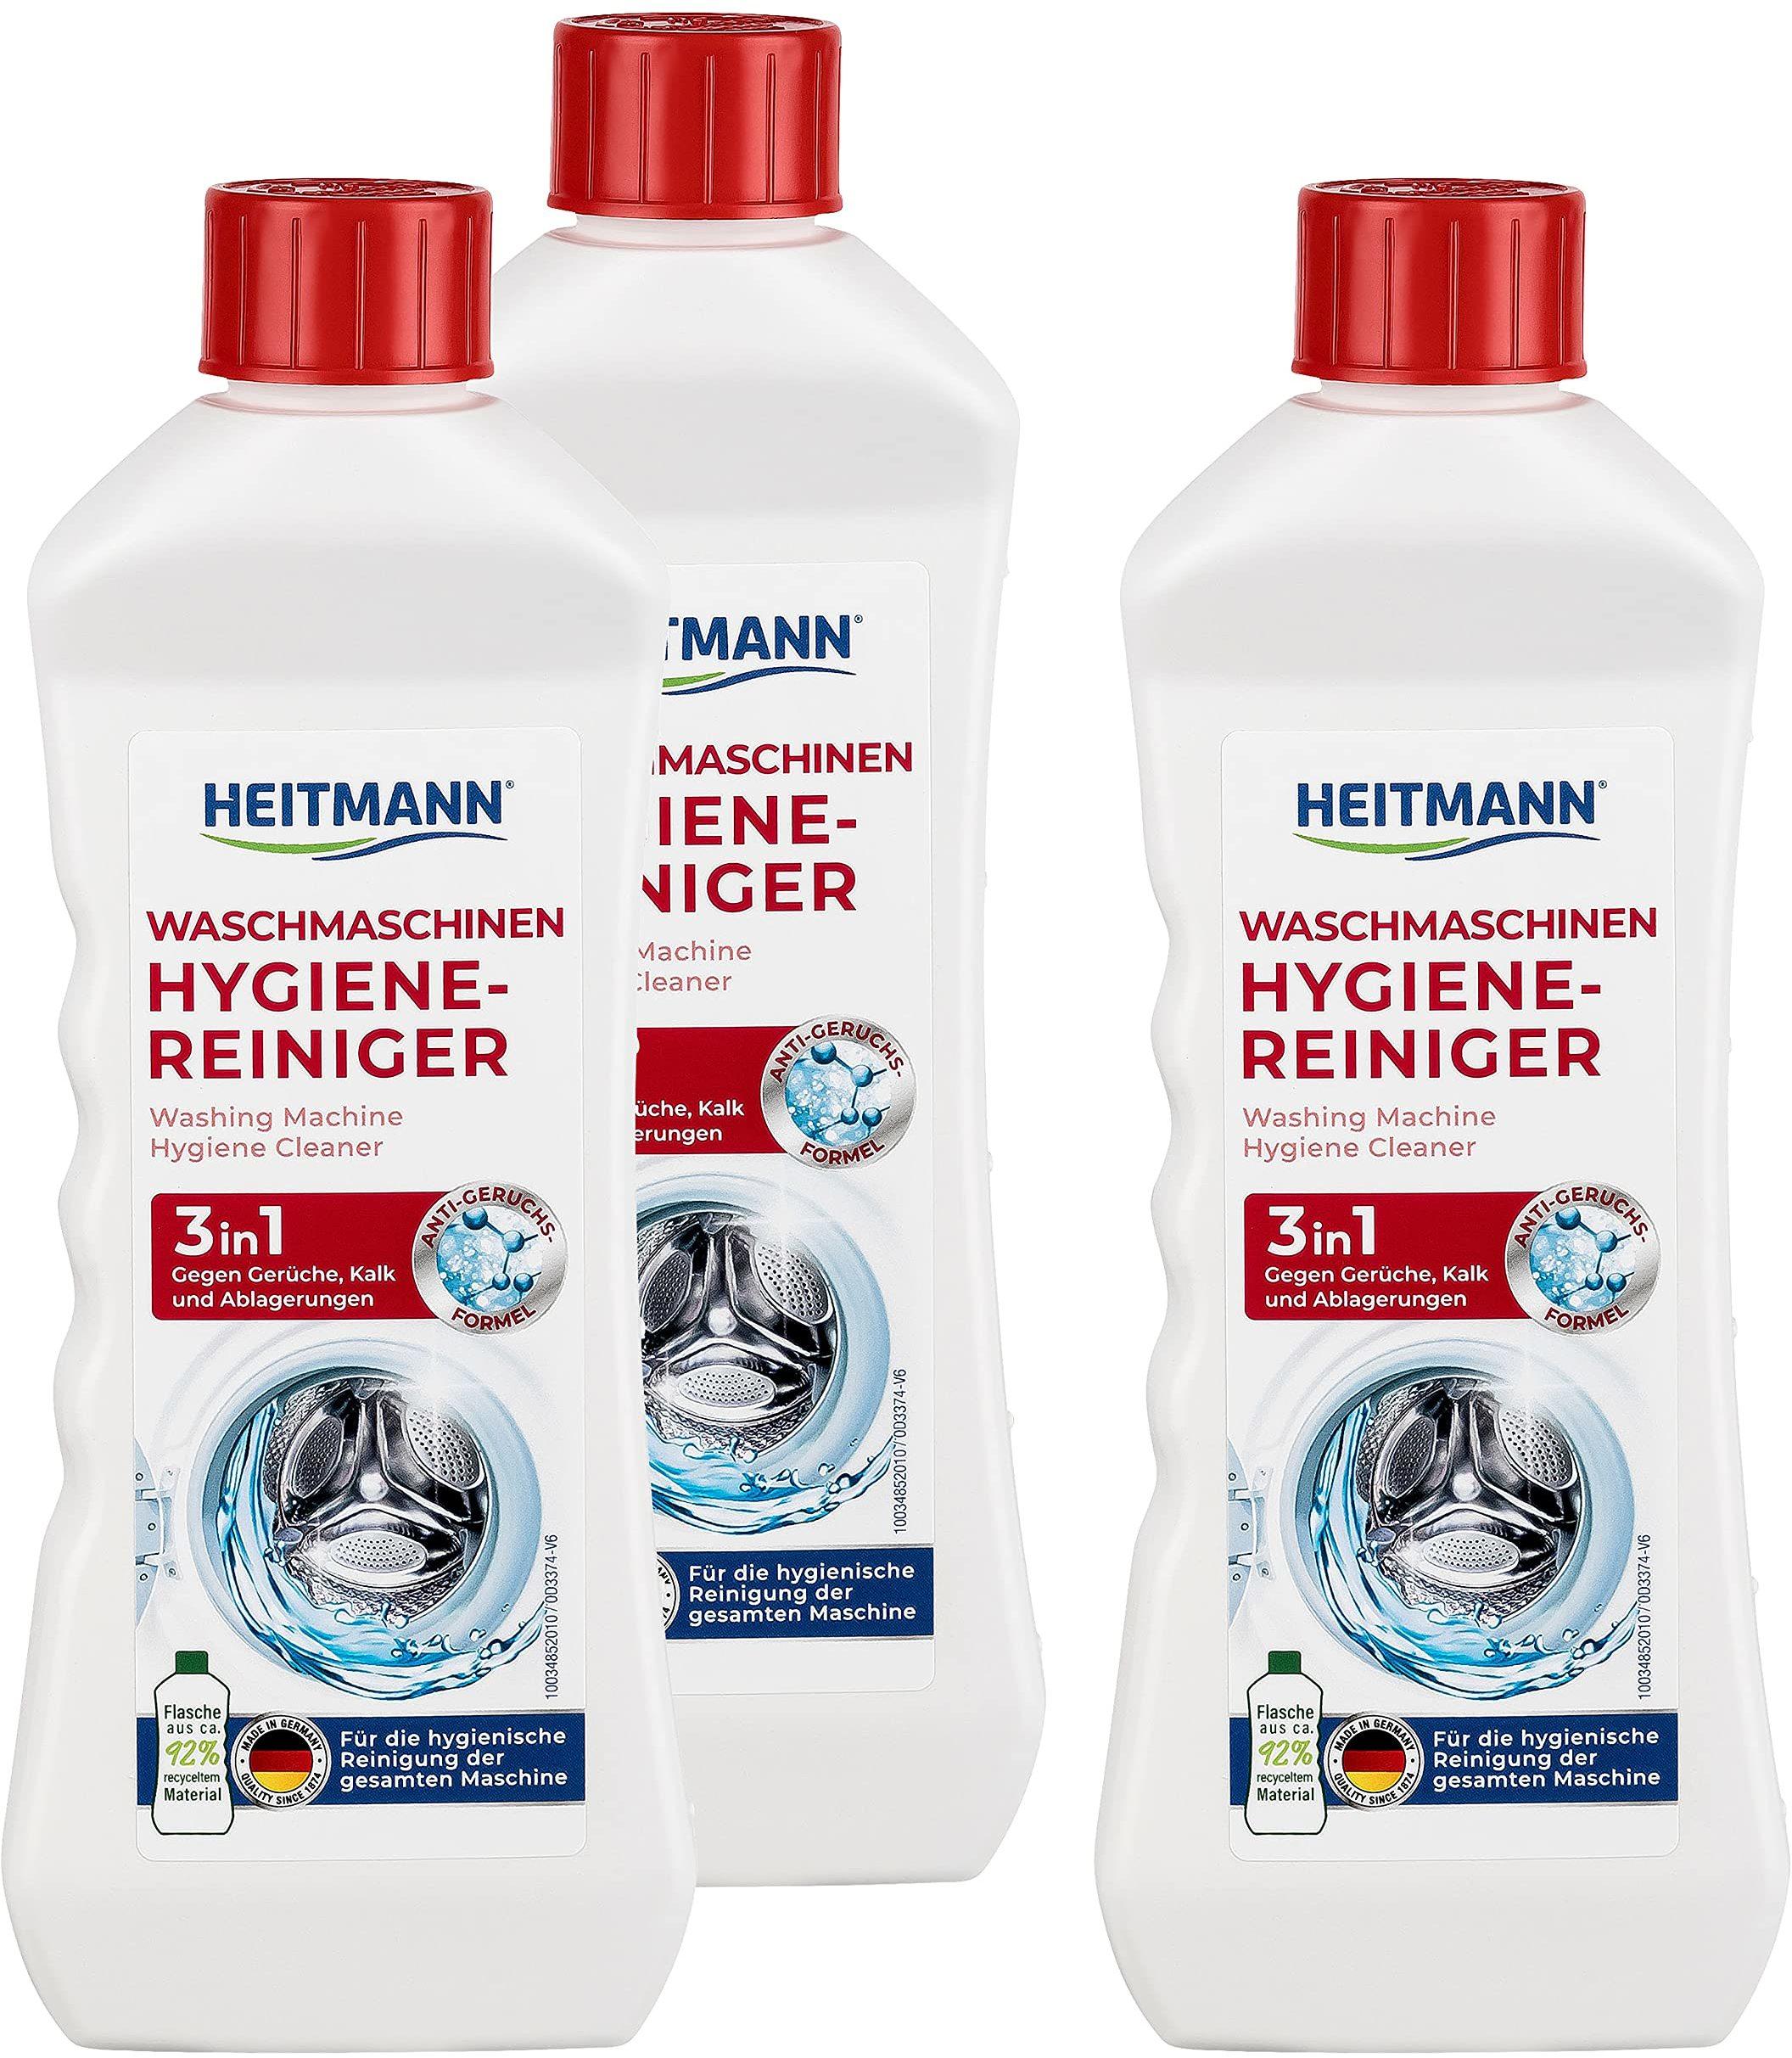 Heitmann Waschmaschinen Hygiene-Reiniger 3in1 (250ml) Erfahrungen 3.3/5  Sternen